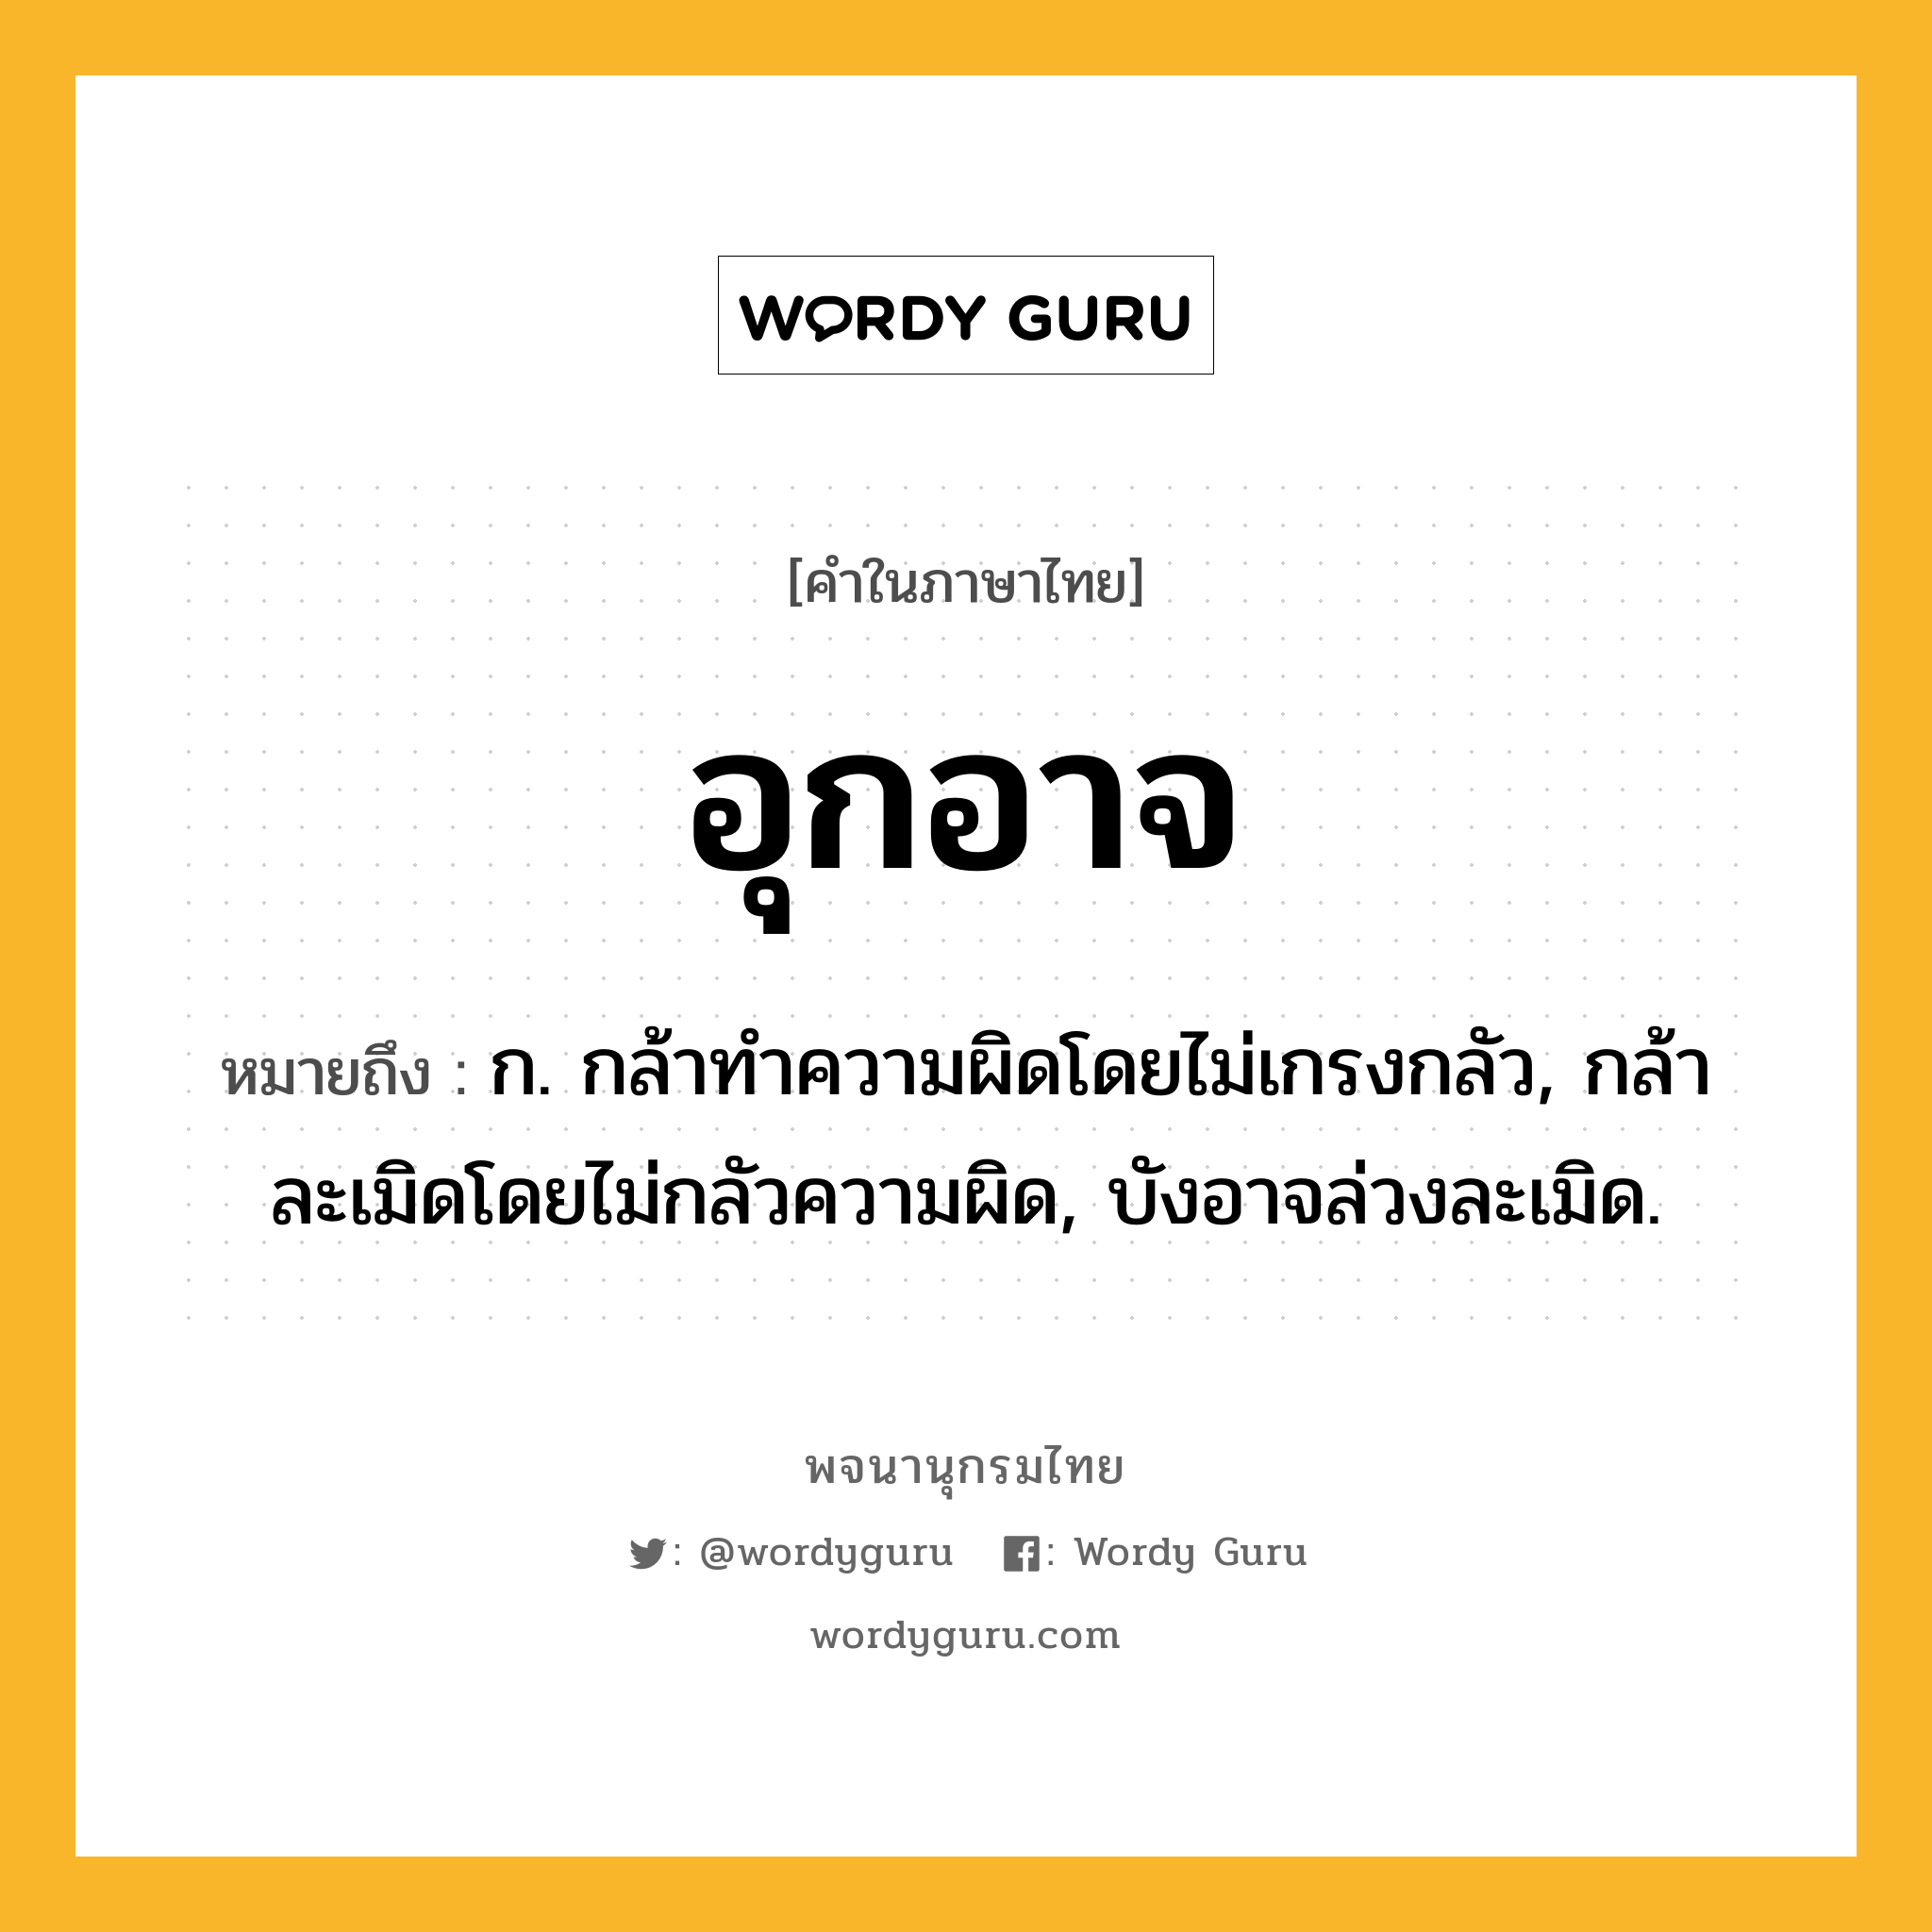 อุกอาจ หมายถึงอะไร?, คำในภาษาไทย อุกอาจ หมายถึง ก. กล้าทําความผิดโดยไม่เกรงกลัว, กล้าละเมิดโดยไม่กลัวความผิด, บังอาจล่วงละเมิด.